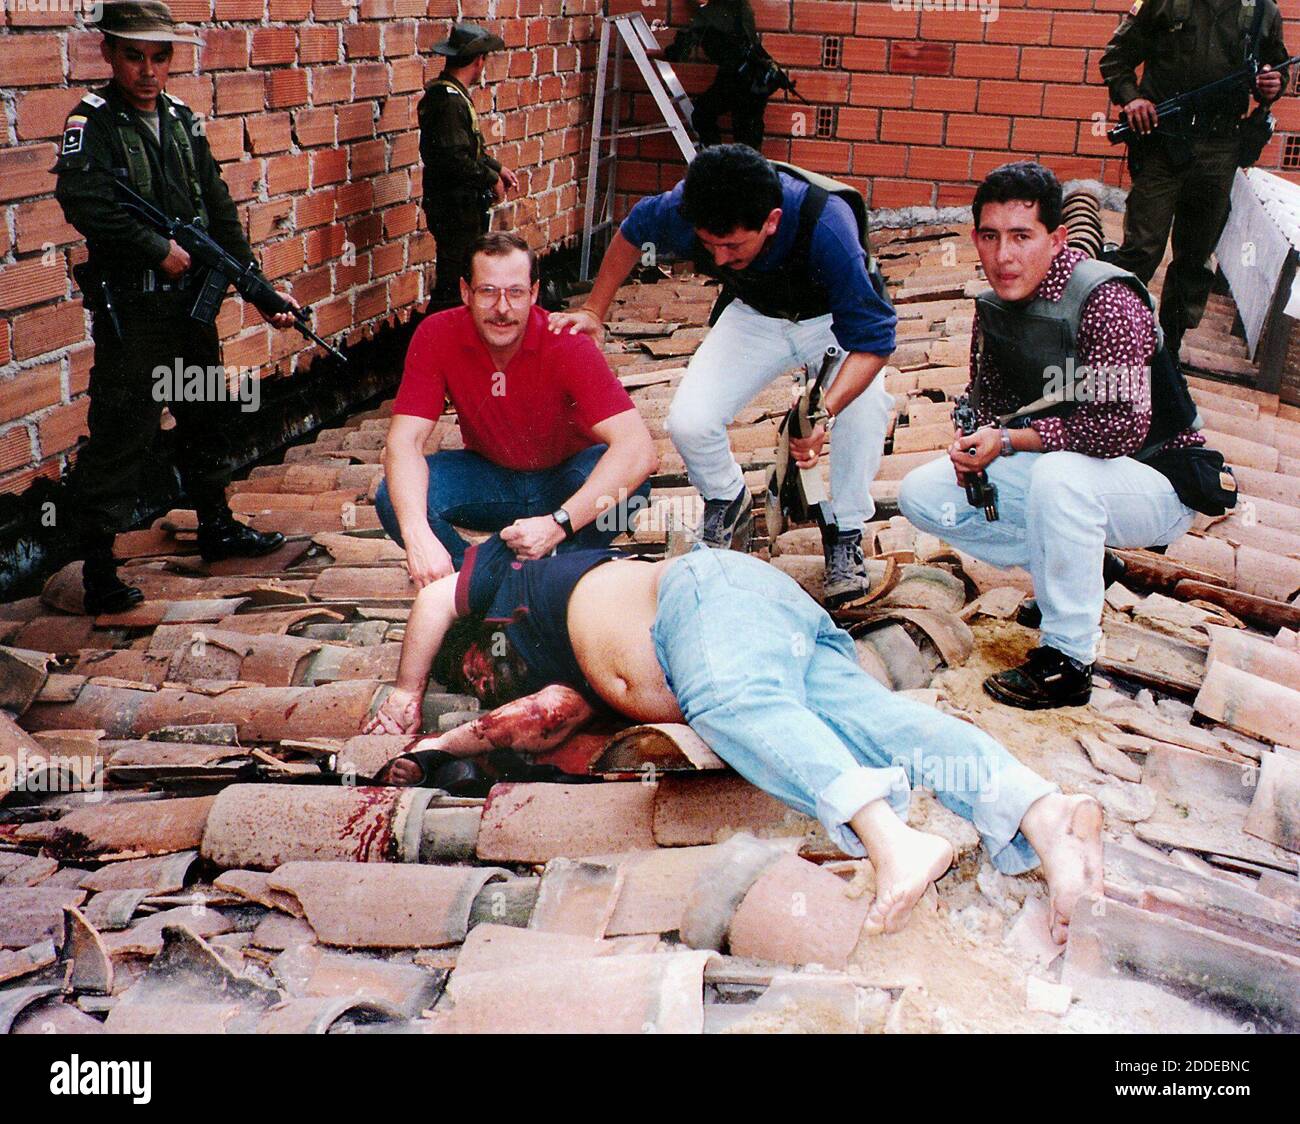 KEIN FILM, KEIN VIDEO, KEIN Fernsehen, KEIN DOKUMENTARFILM - HANDOUT - (9. November) Steve Murphy, von der DEA des Vereinigten Staates, in rotem Hemd, posiert mit dem Körper von Pablo Escobar, nachdem er am 2. Dezember 1993 auf einem Dach in seiner Heimatstadt Medellin, Kolumbien, erschossen wurde. Vor acht Jahren, auf Ersuchen der kolumbianischen Regierung, haben geheime US-Militär- und Spionagekräfte Pablo Escobar, den reichsten Kokainhändler der Welt, auf die Spur gebracht und getötet. Foto: Philadelphia Inquirer/TNS/ABACAPRESS.COM Stockfoto